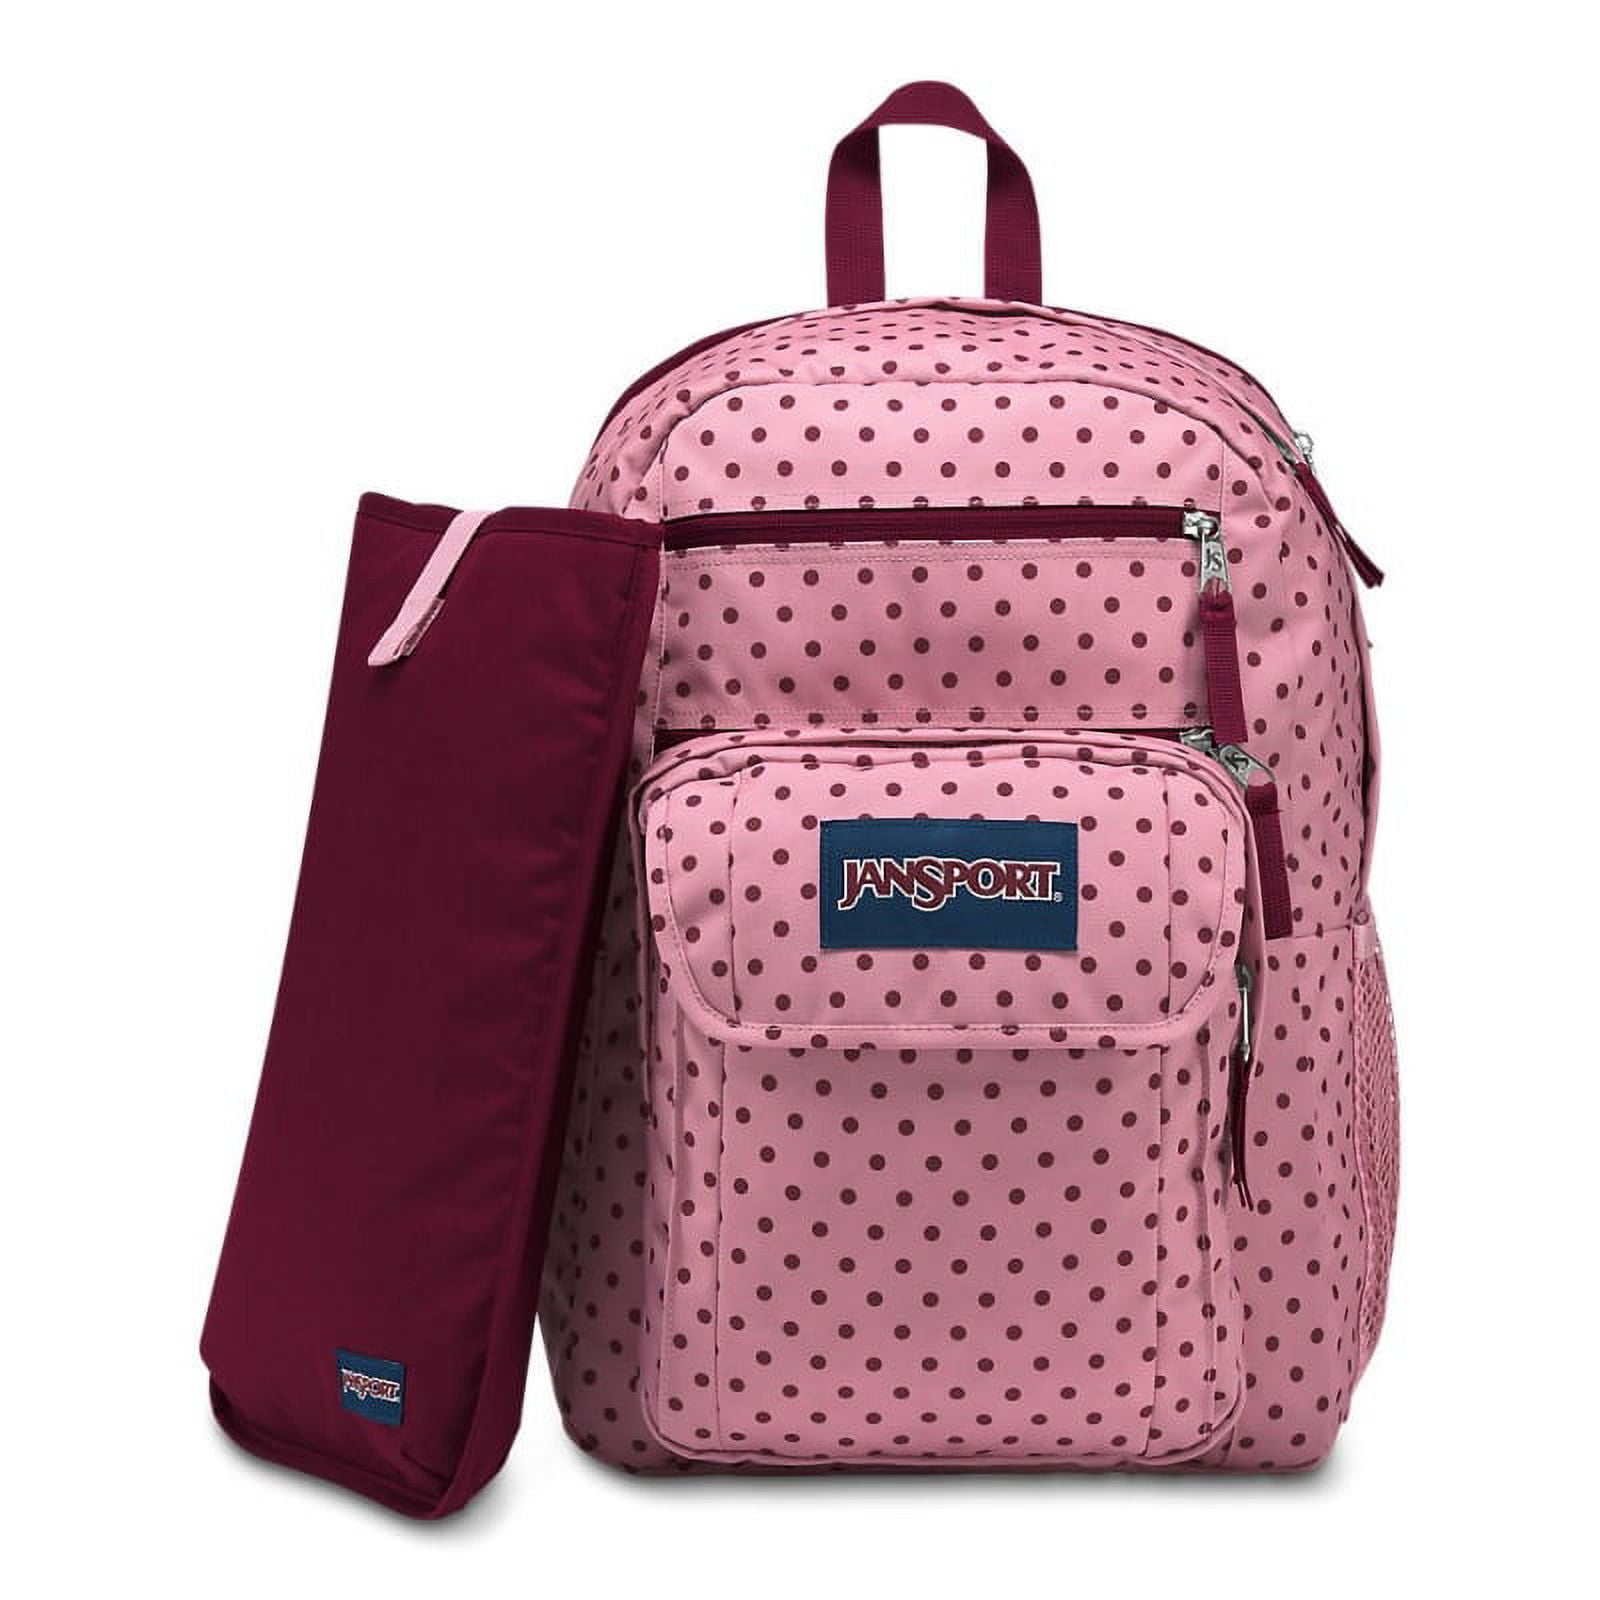 JanSport Digital Student Laptop Backpack - Vintage Pink Dot